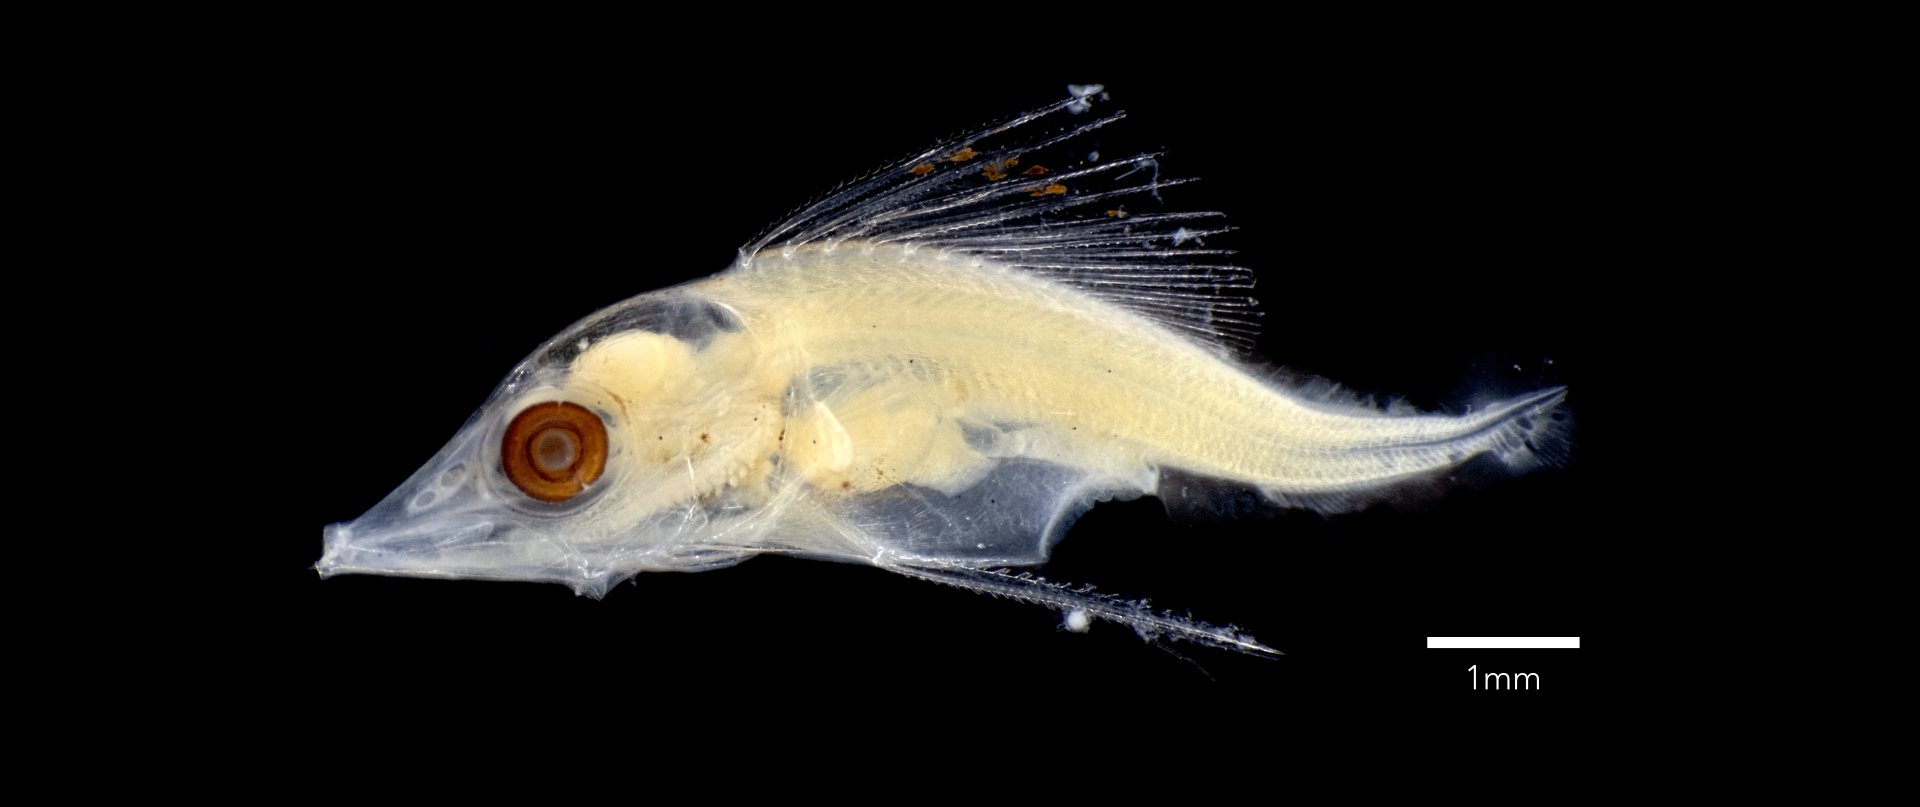 Striped Scolar (Diplospinus multistriatus) larva